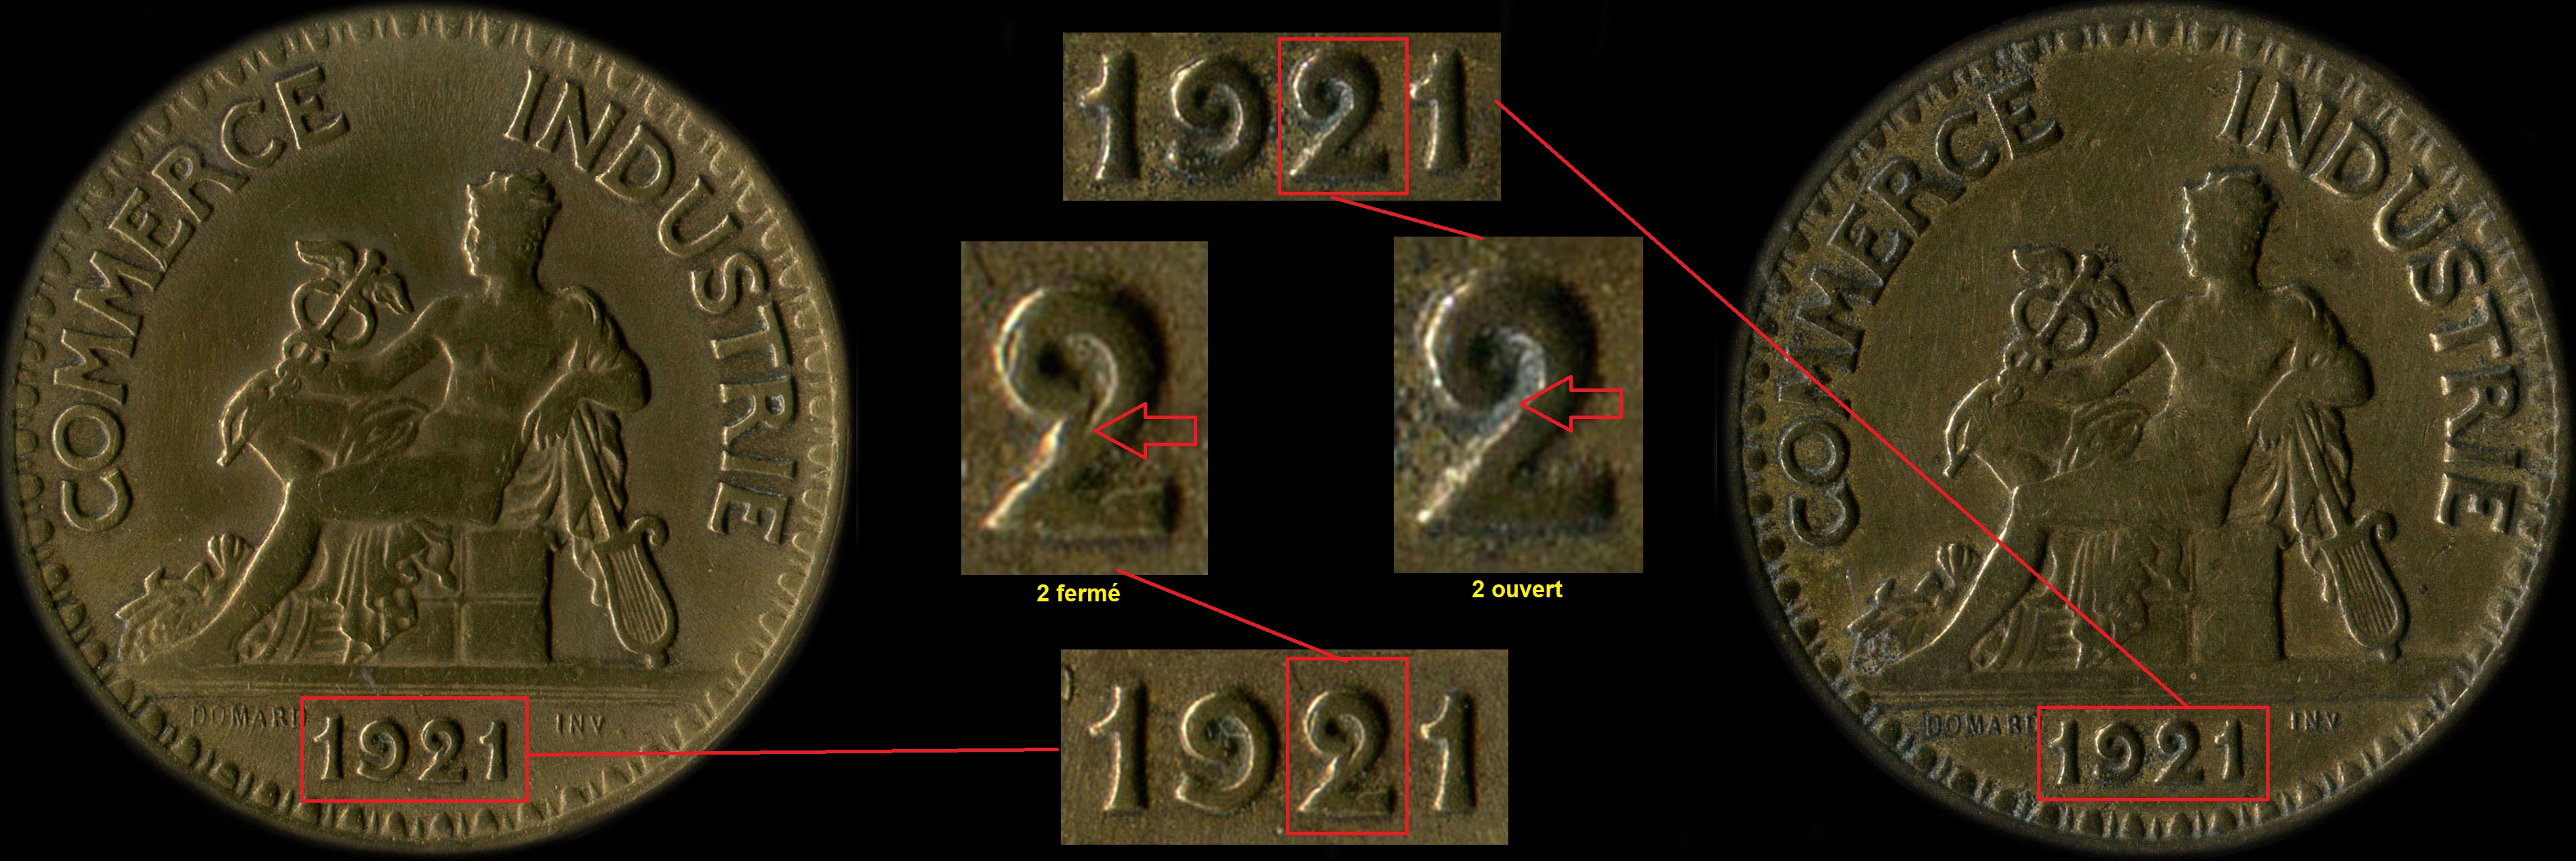 Variante 2 ouvert ou 2 fermé sur 2 francs 1921